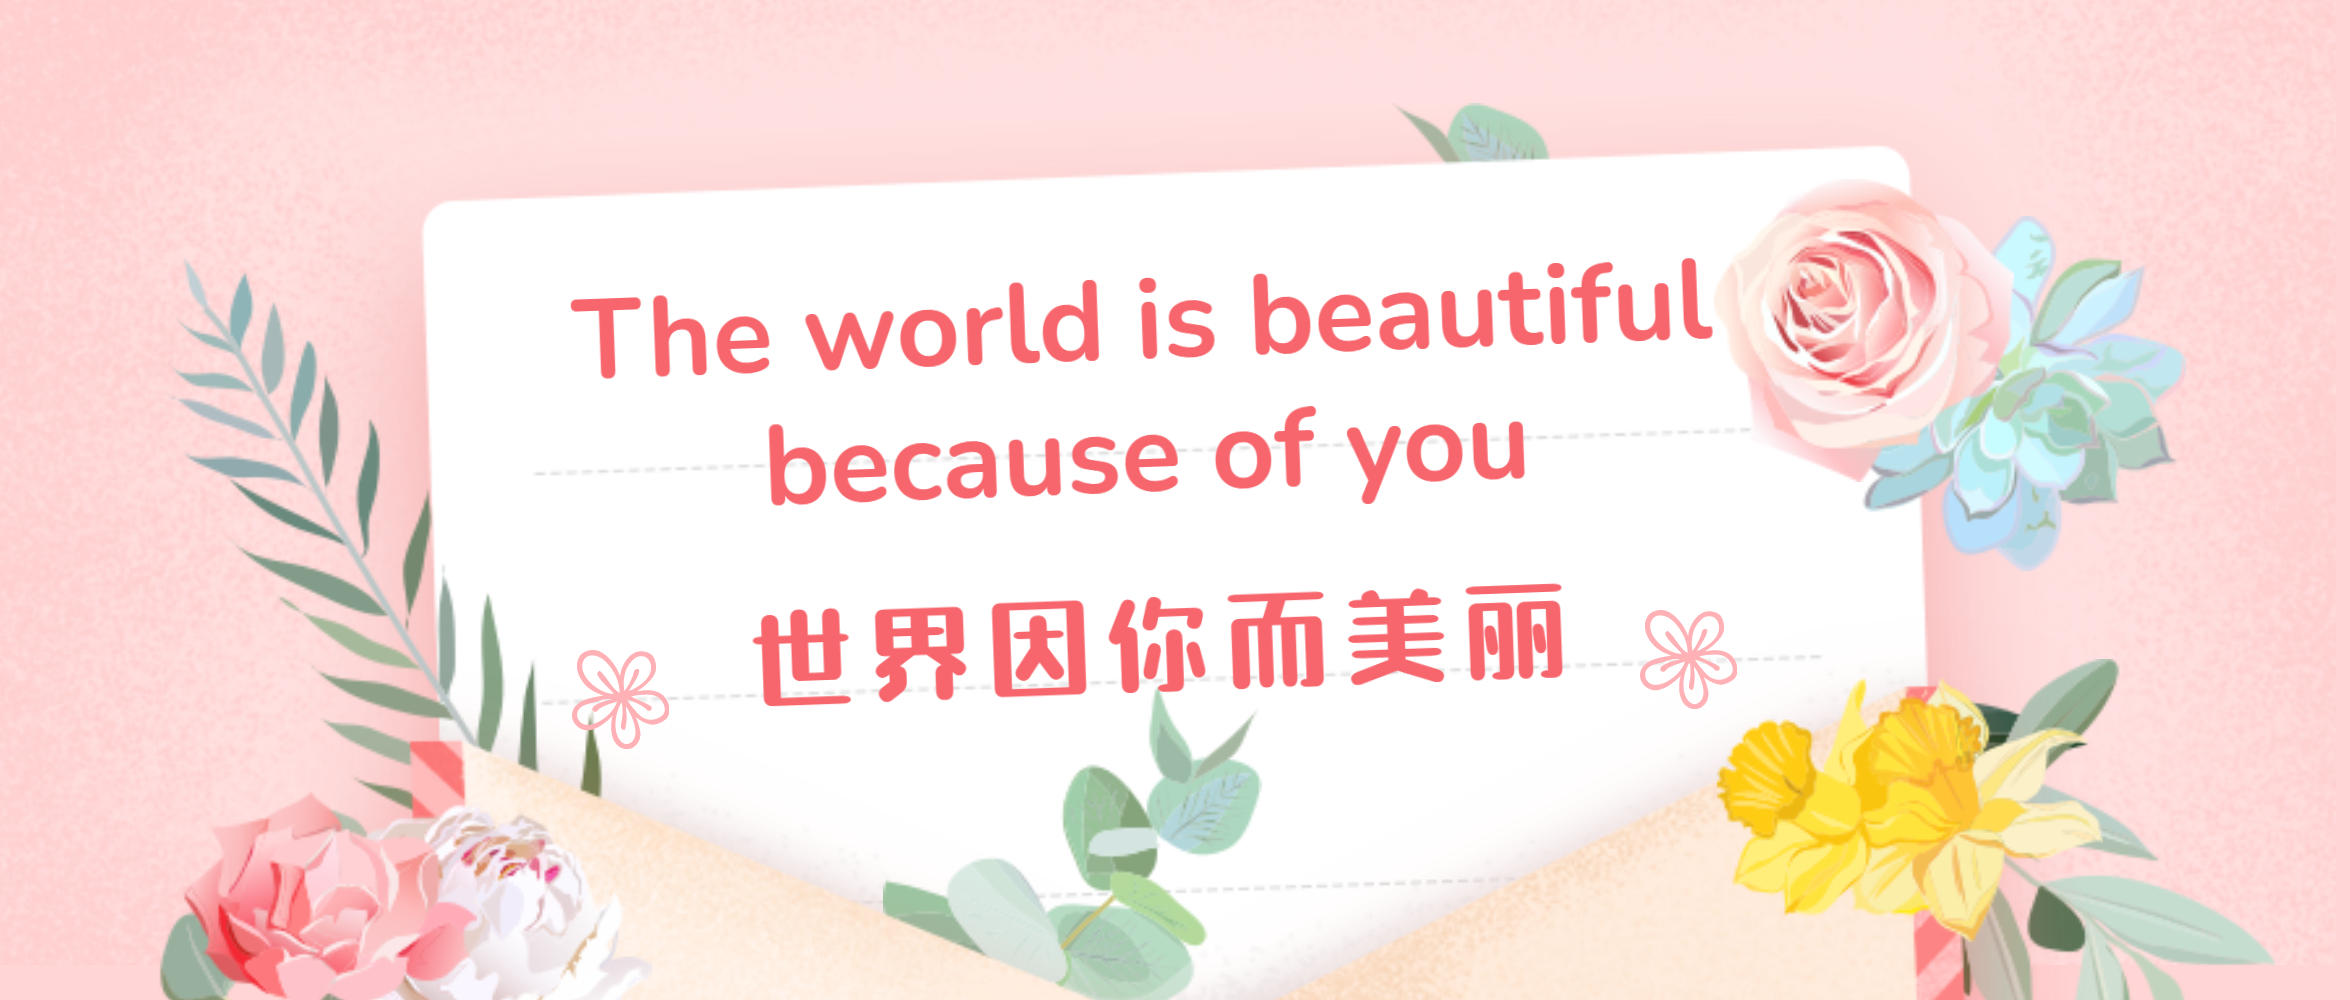 世界因你而美丽 | 郑锅举办最美女神节活动